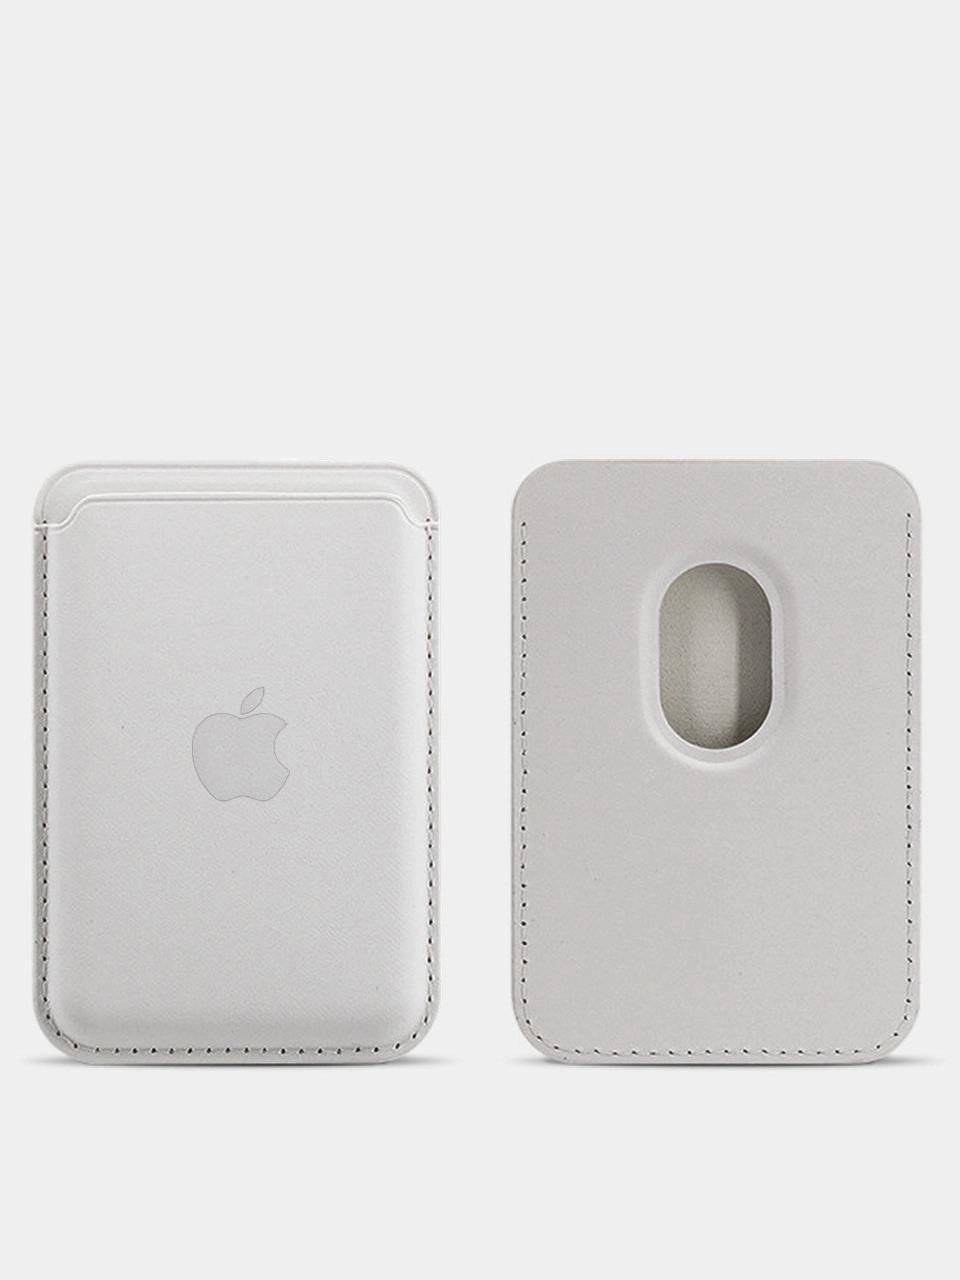 Кошелек iPhone Leather Wallet MagSafe белый купить